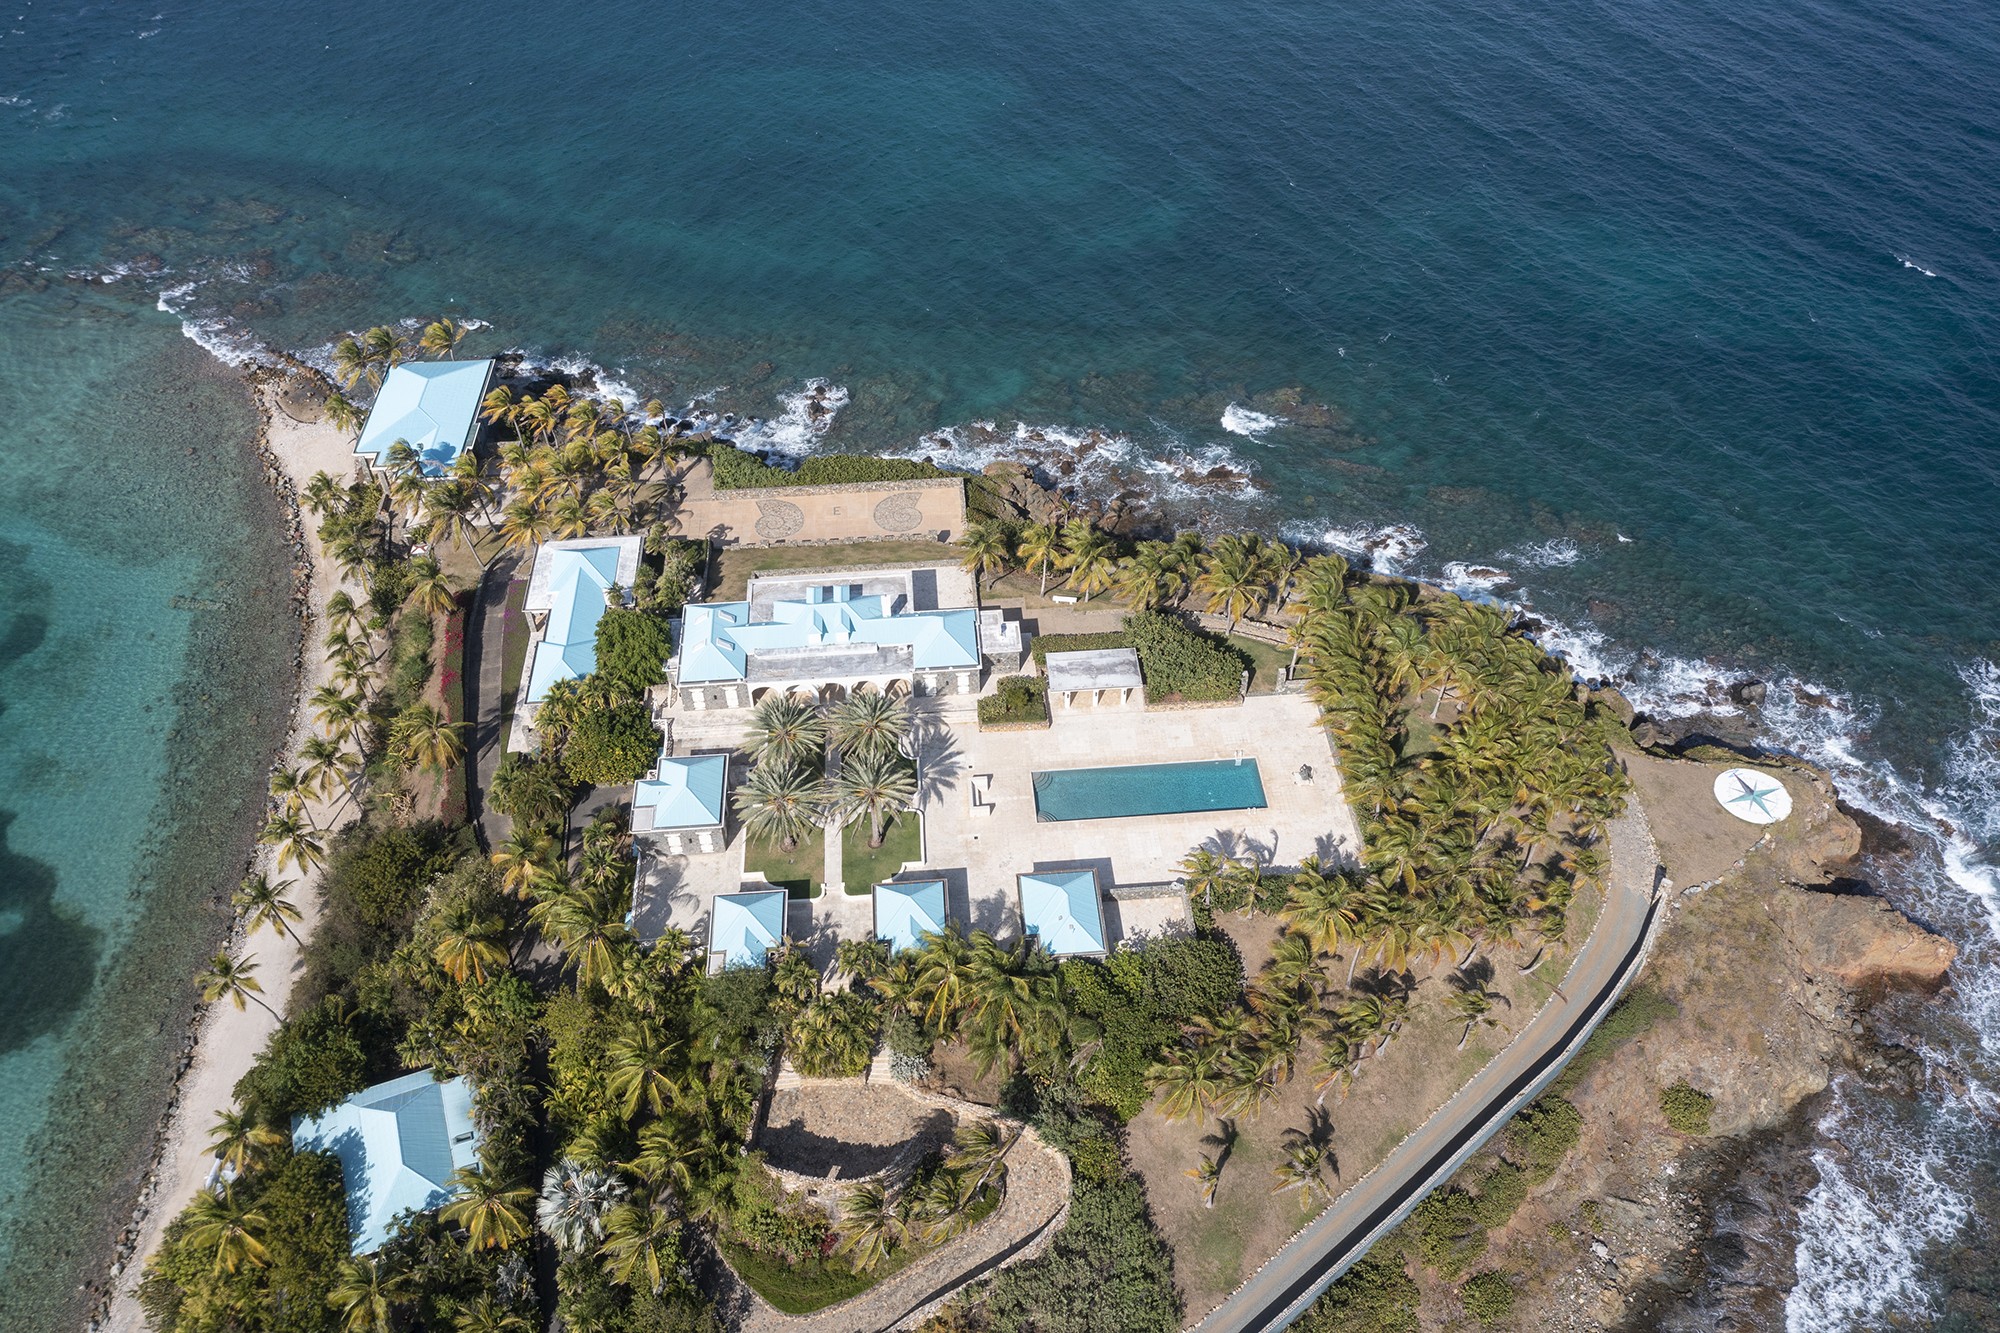 Foto aérea mostra extenso complexo na ilha de propriedade de Jeffrey Epstein nas Ilhas Virgens (Foto: SplashNews.com/Reprodução)